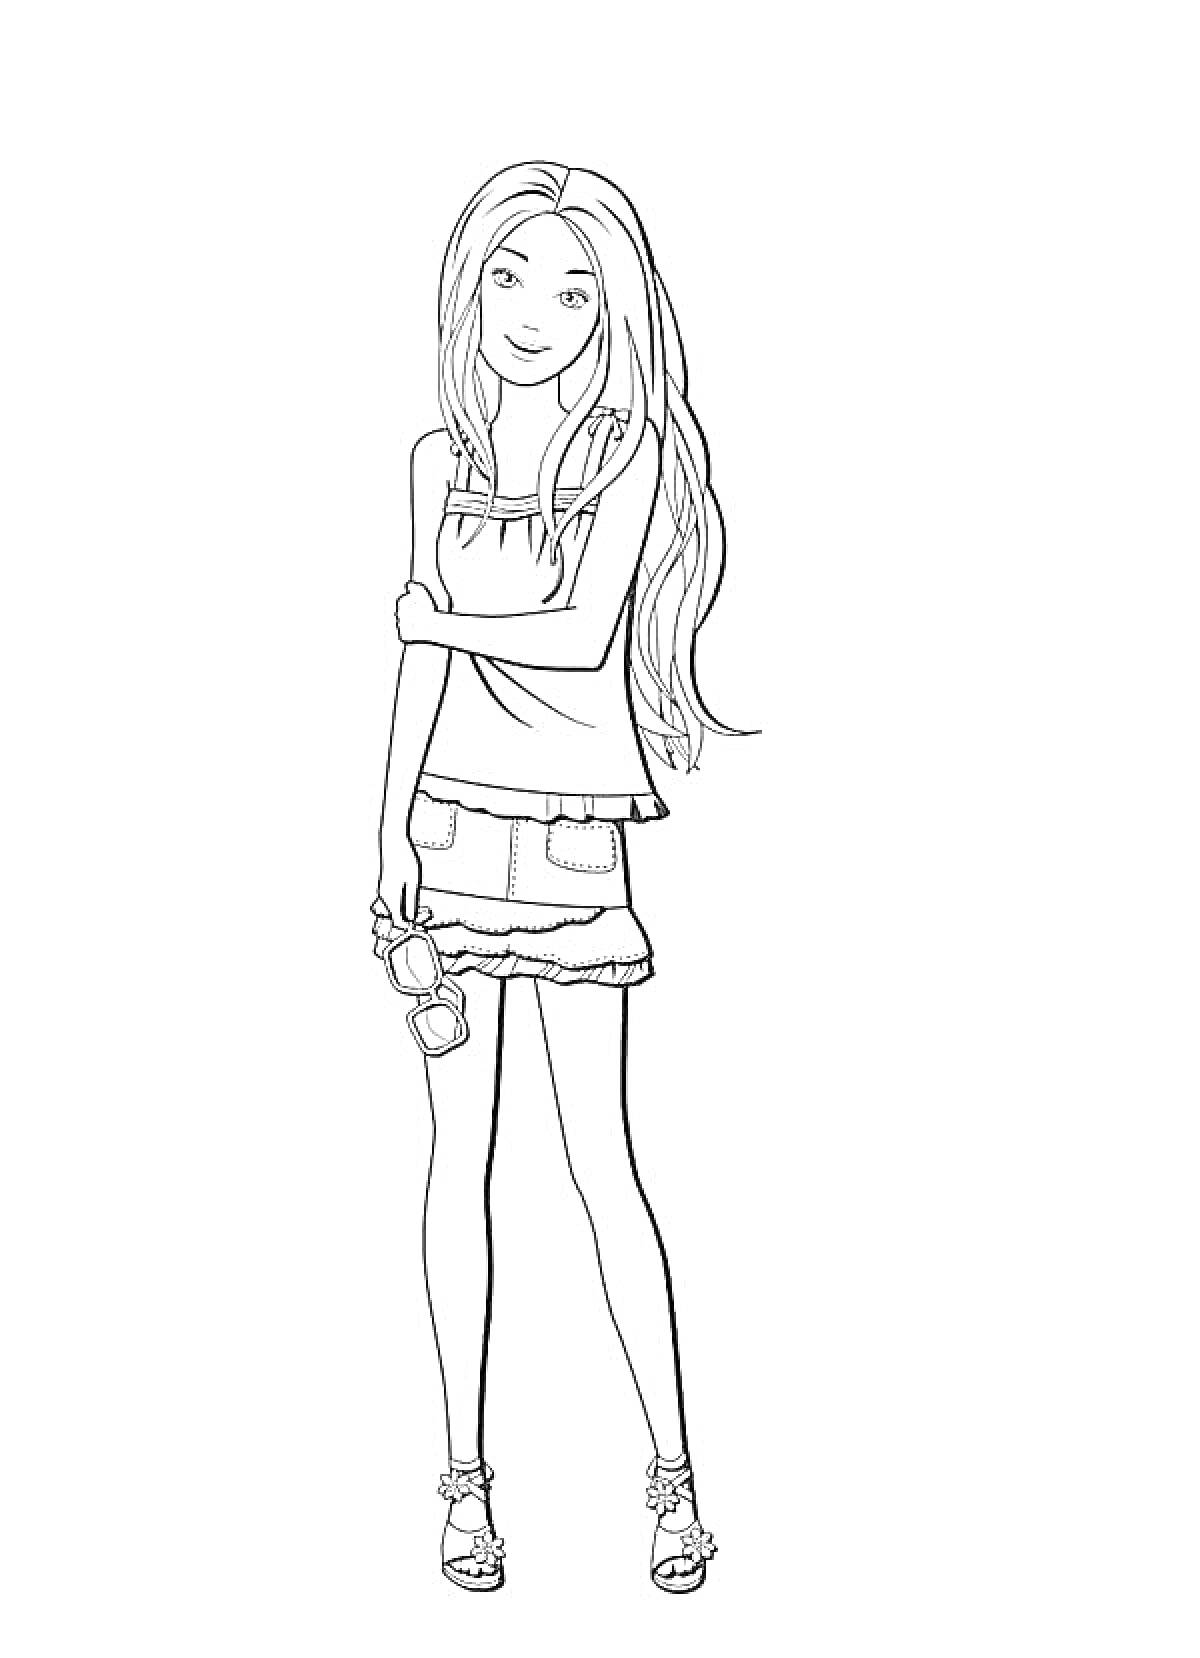 Раскраска Девушка в полной рост, стоящая в босоножках с длинными распущенными волосами, в топе с короткими рукавами и юбке с оборкой, держит в одной руке пару очков.